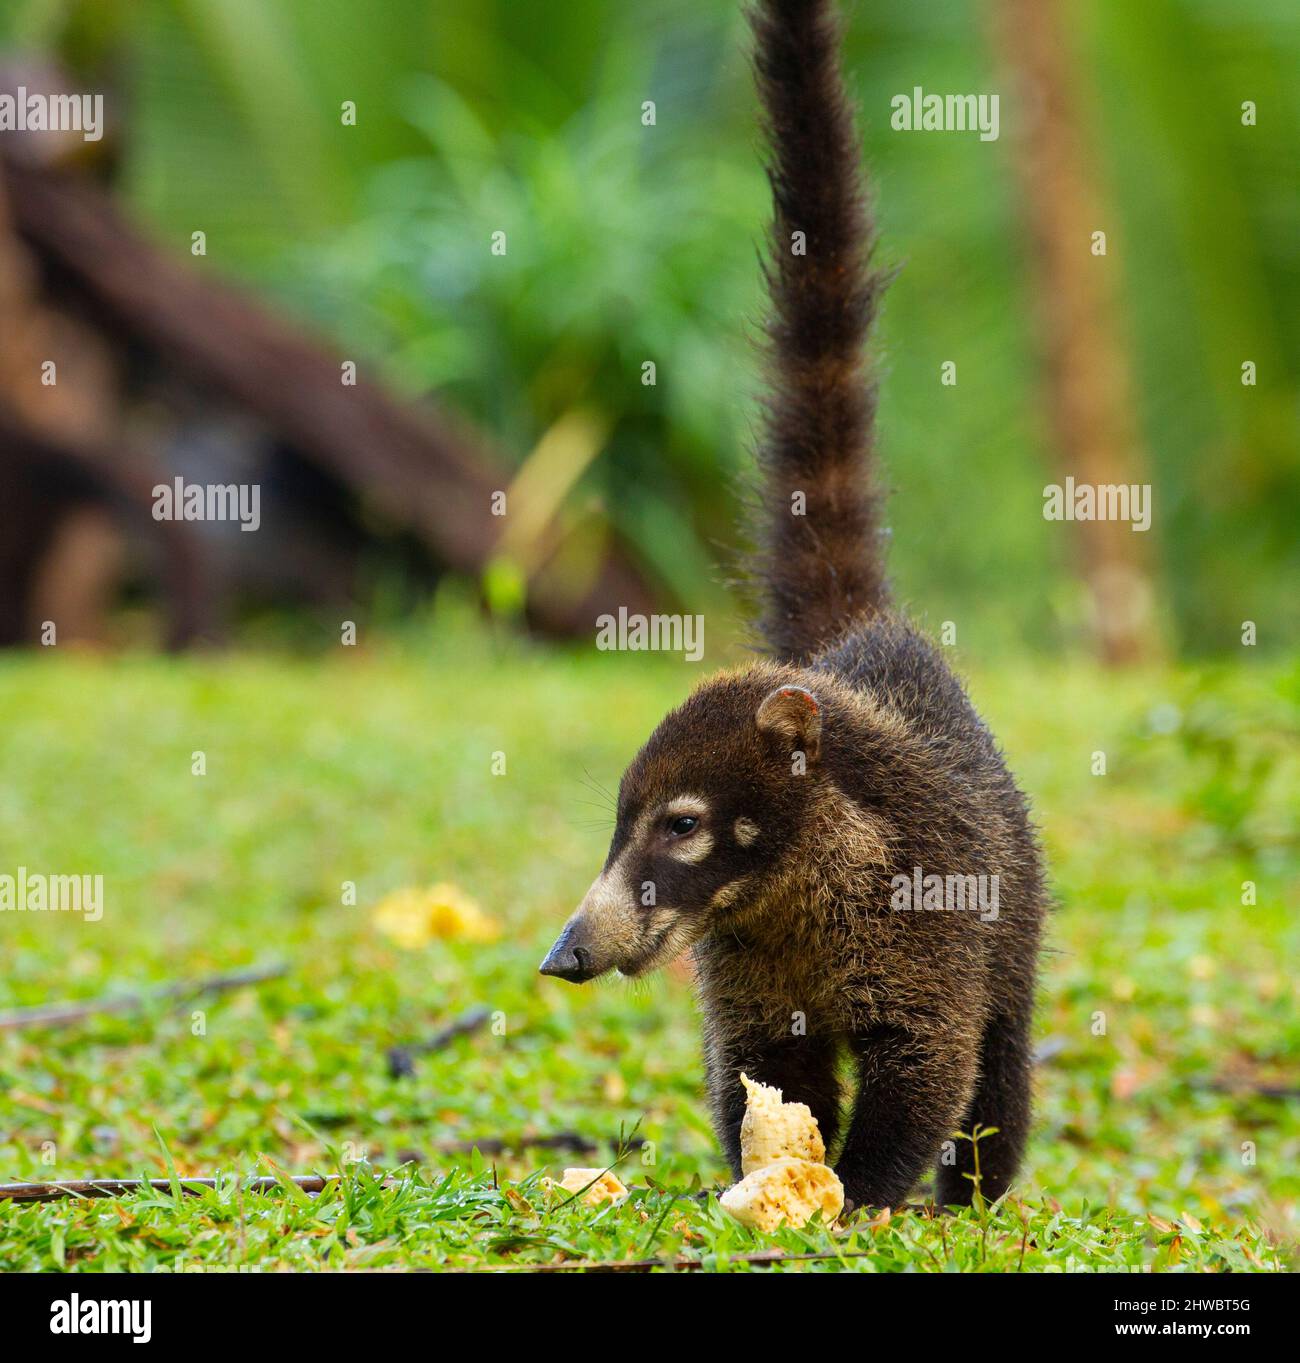 White-Nosed Coati (Nasua narica) eating a banana Stock Photo